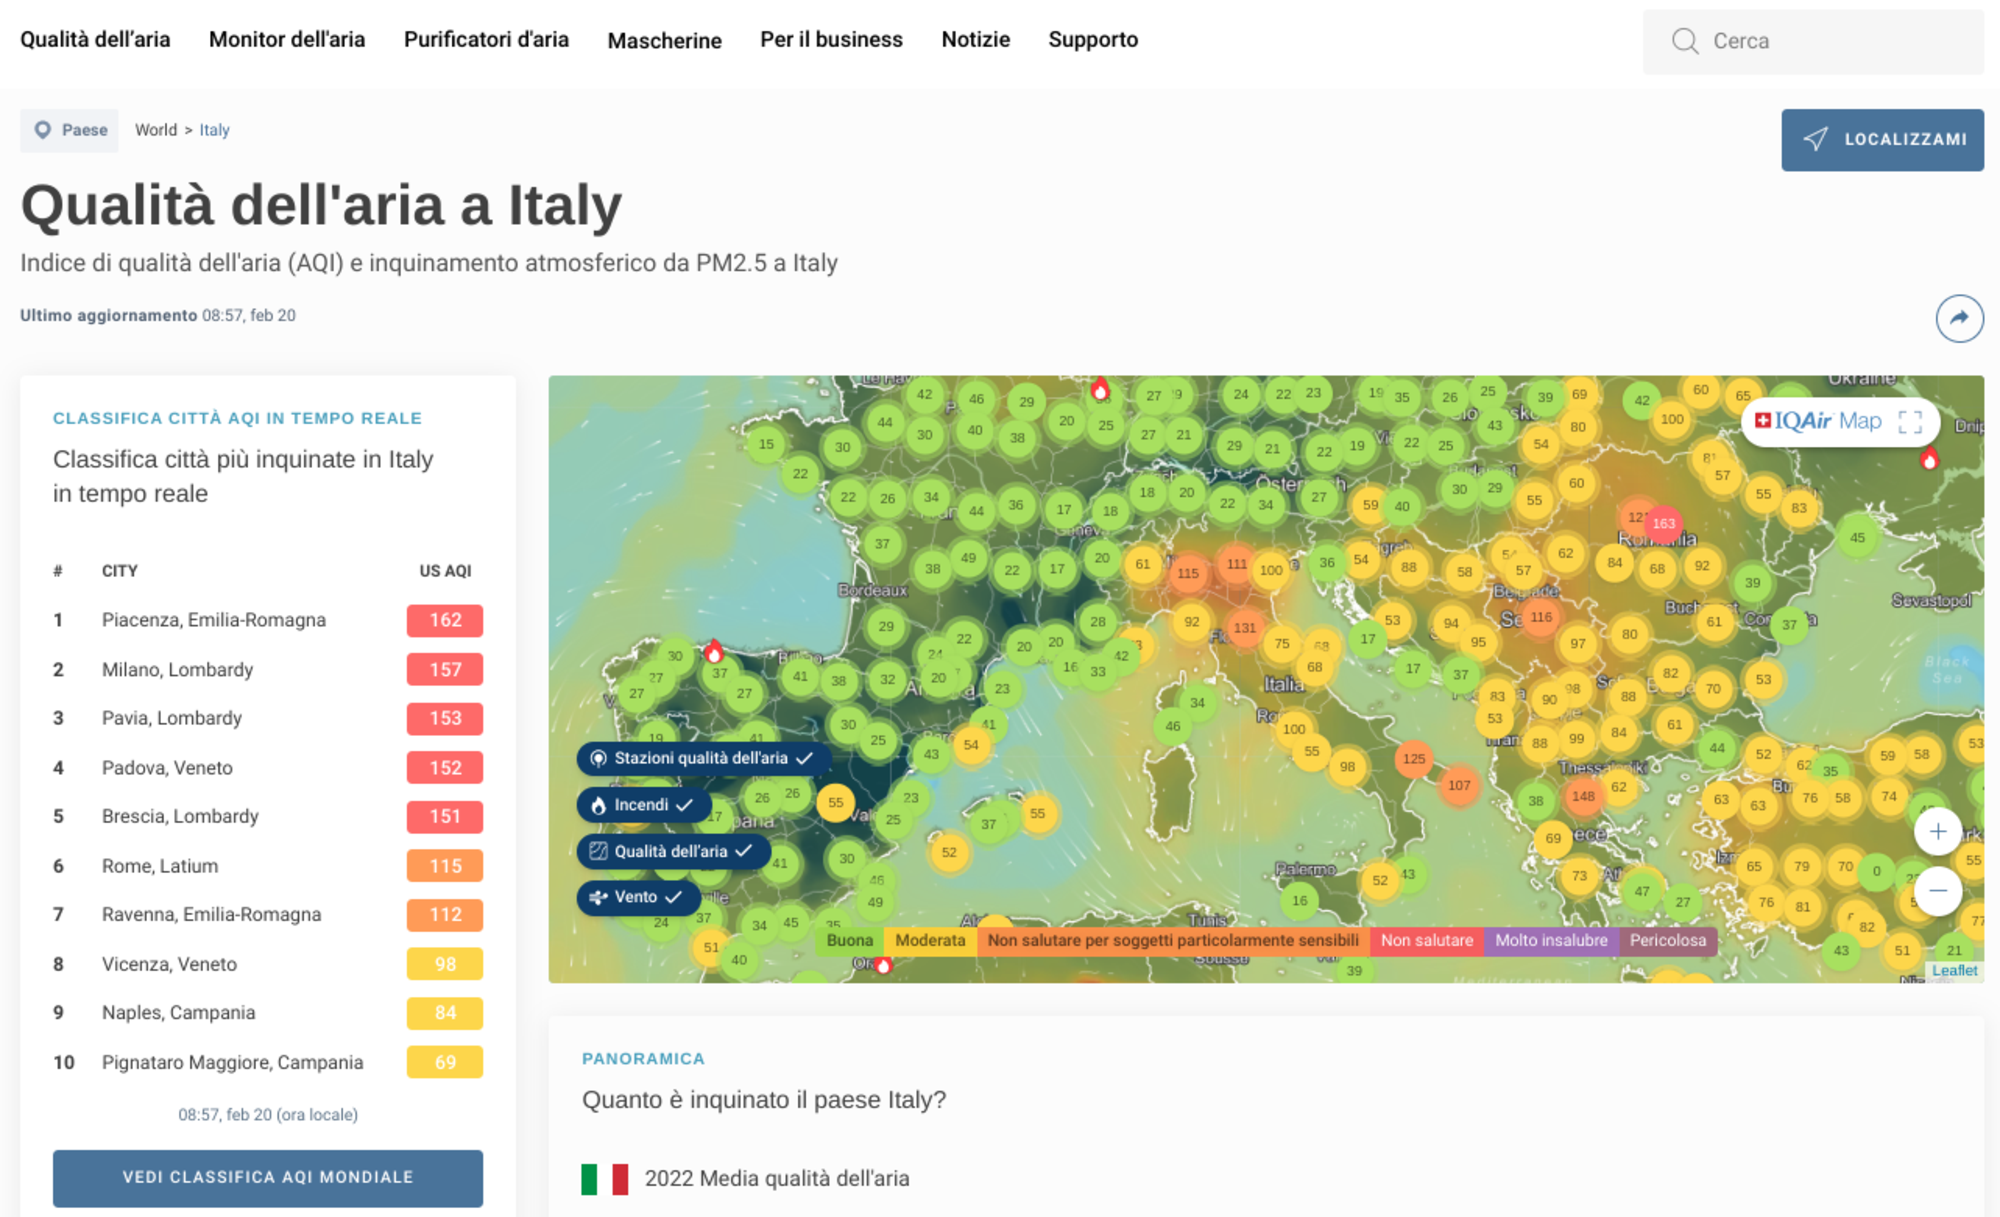 Piacenza in testa alla classifica delle citt&agrave; pi&ugrave; inquinate d&#039;Italia per il sito IqAir